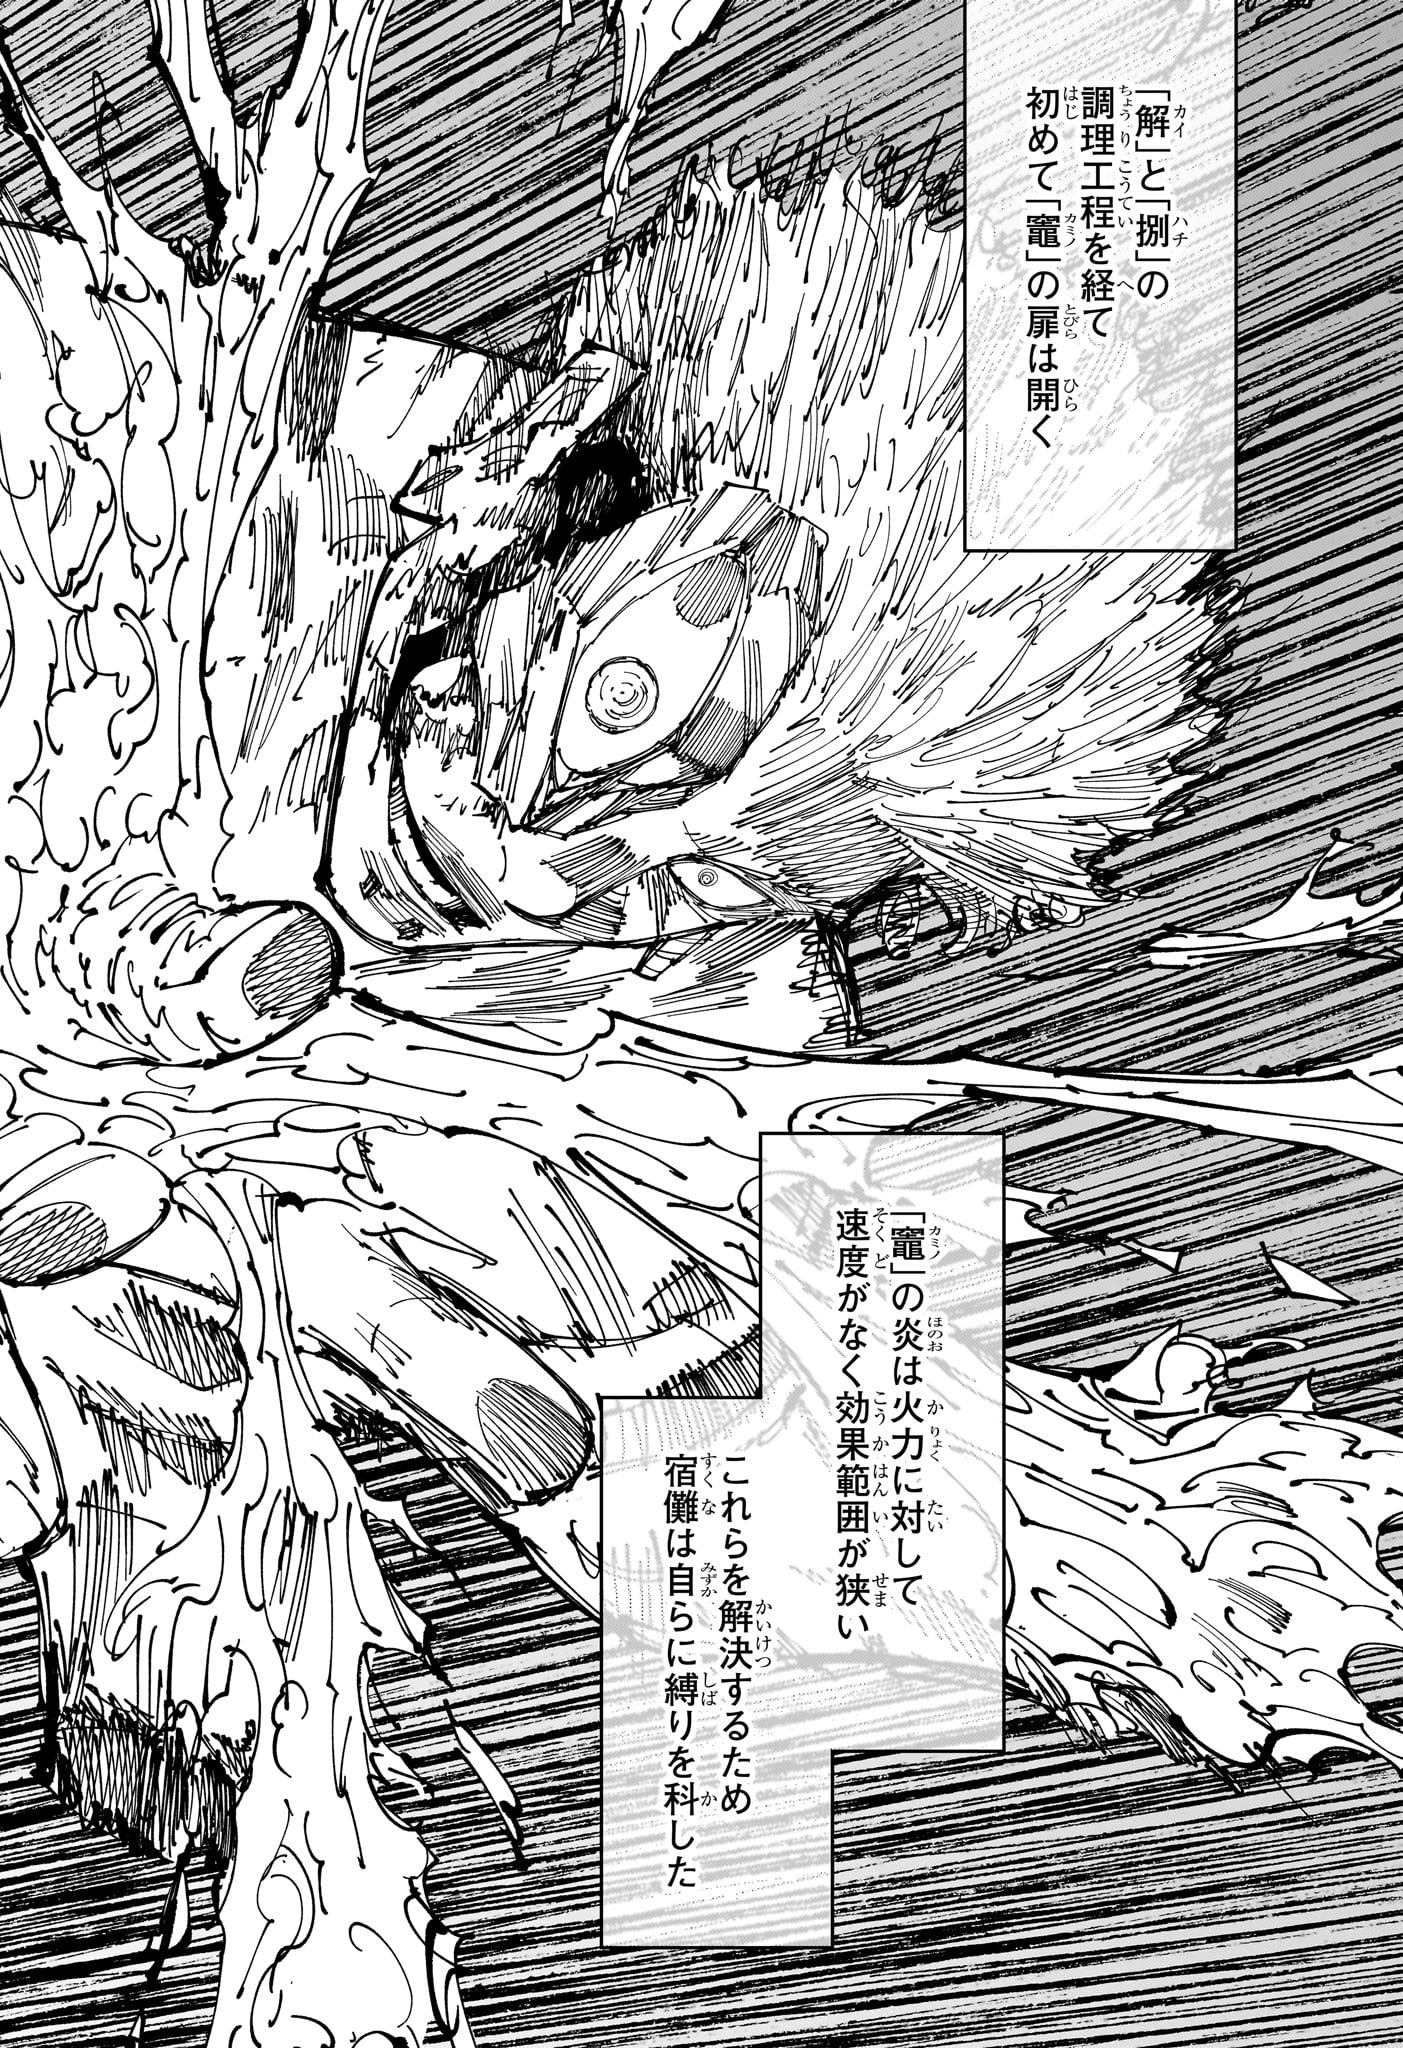 Jujutsu Kaisen - Chapter 259 - Page 2